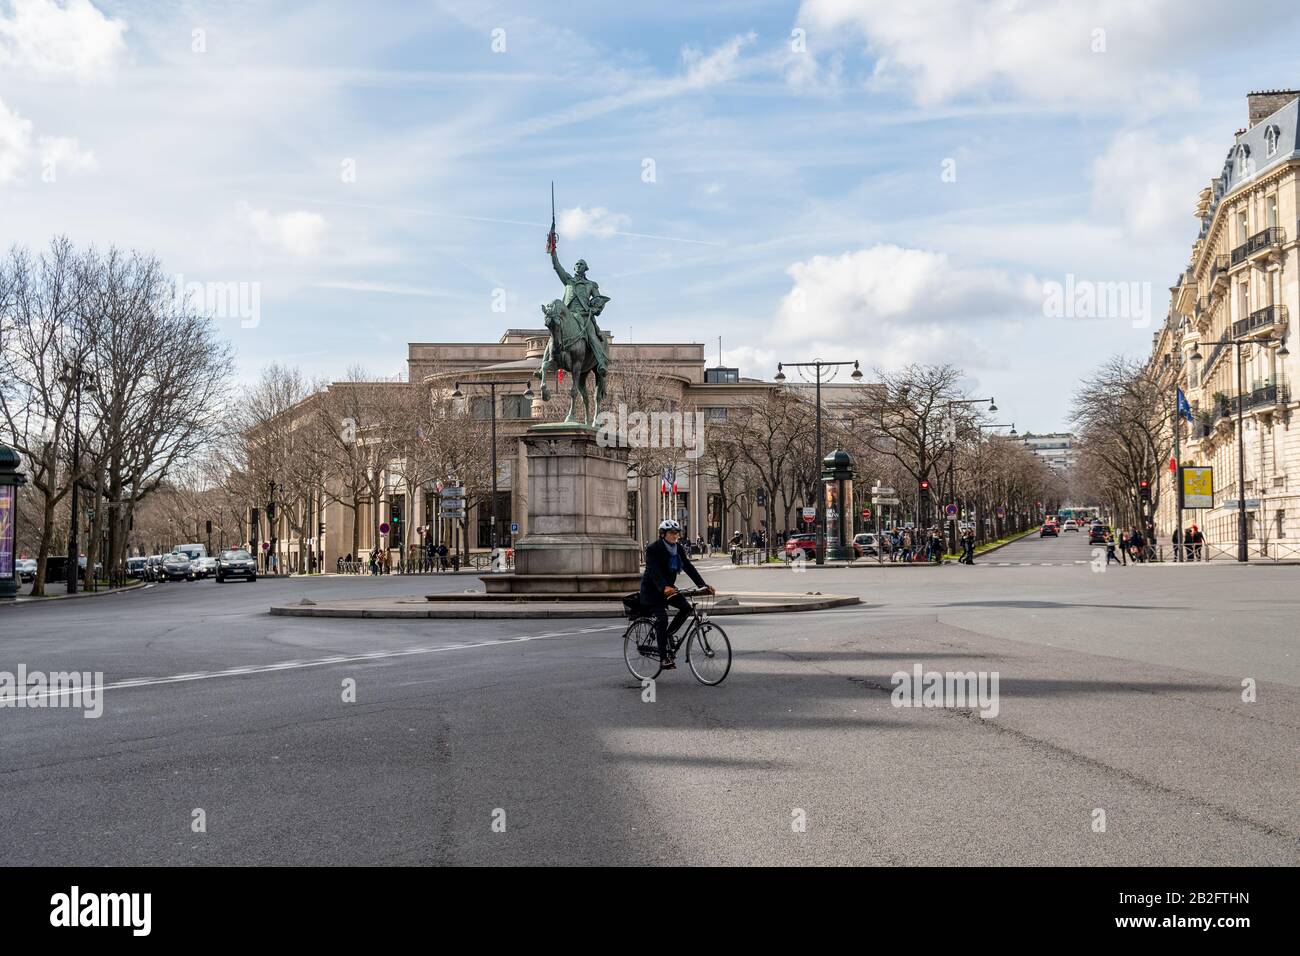 Statue de George Washington sur la place Iena à Paris Banque D'Images